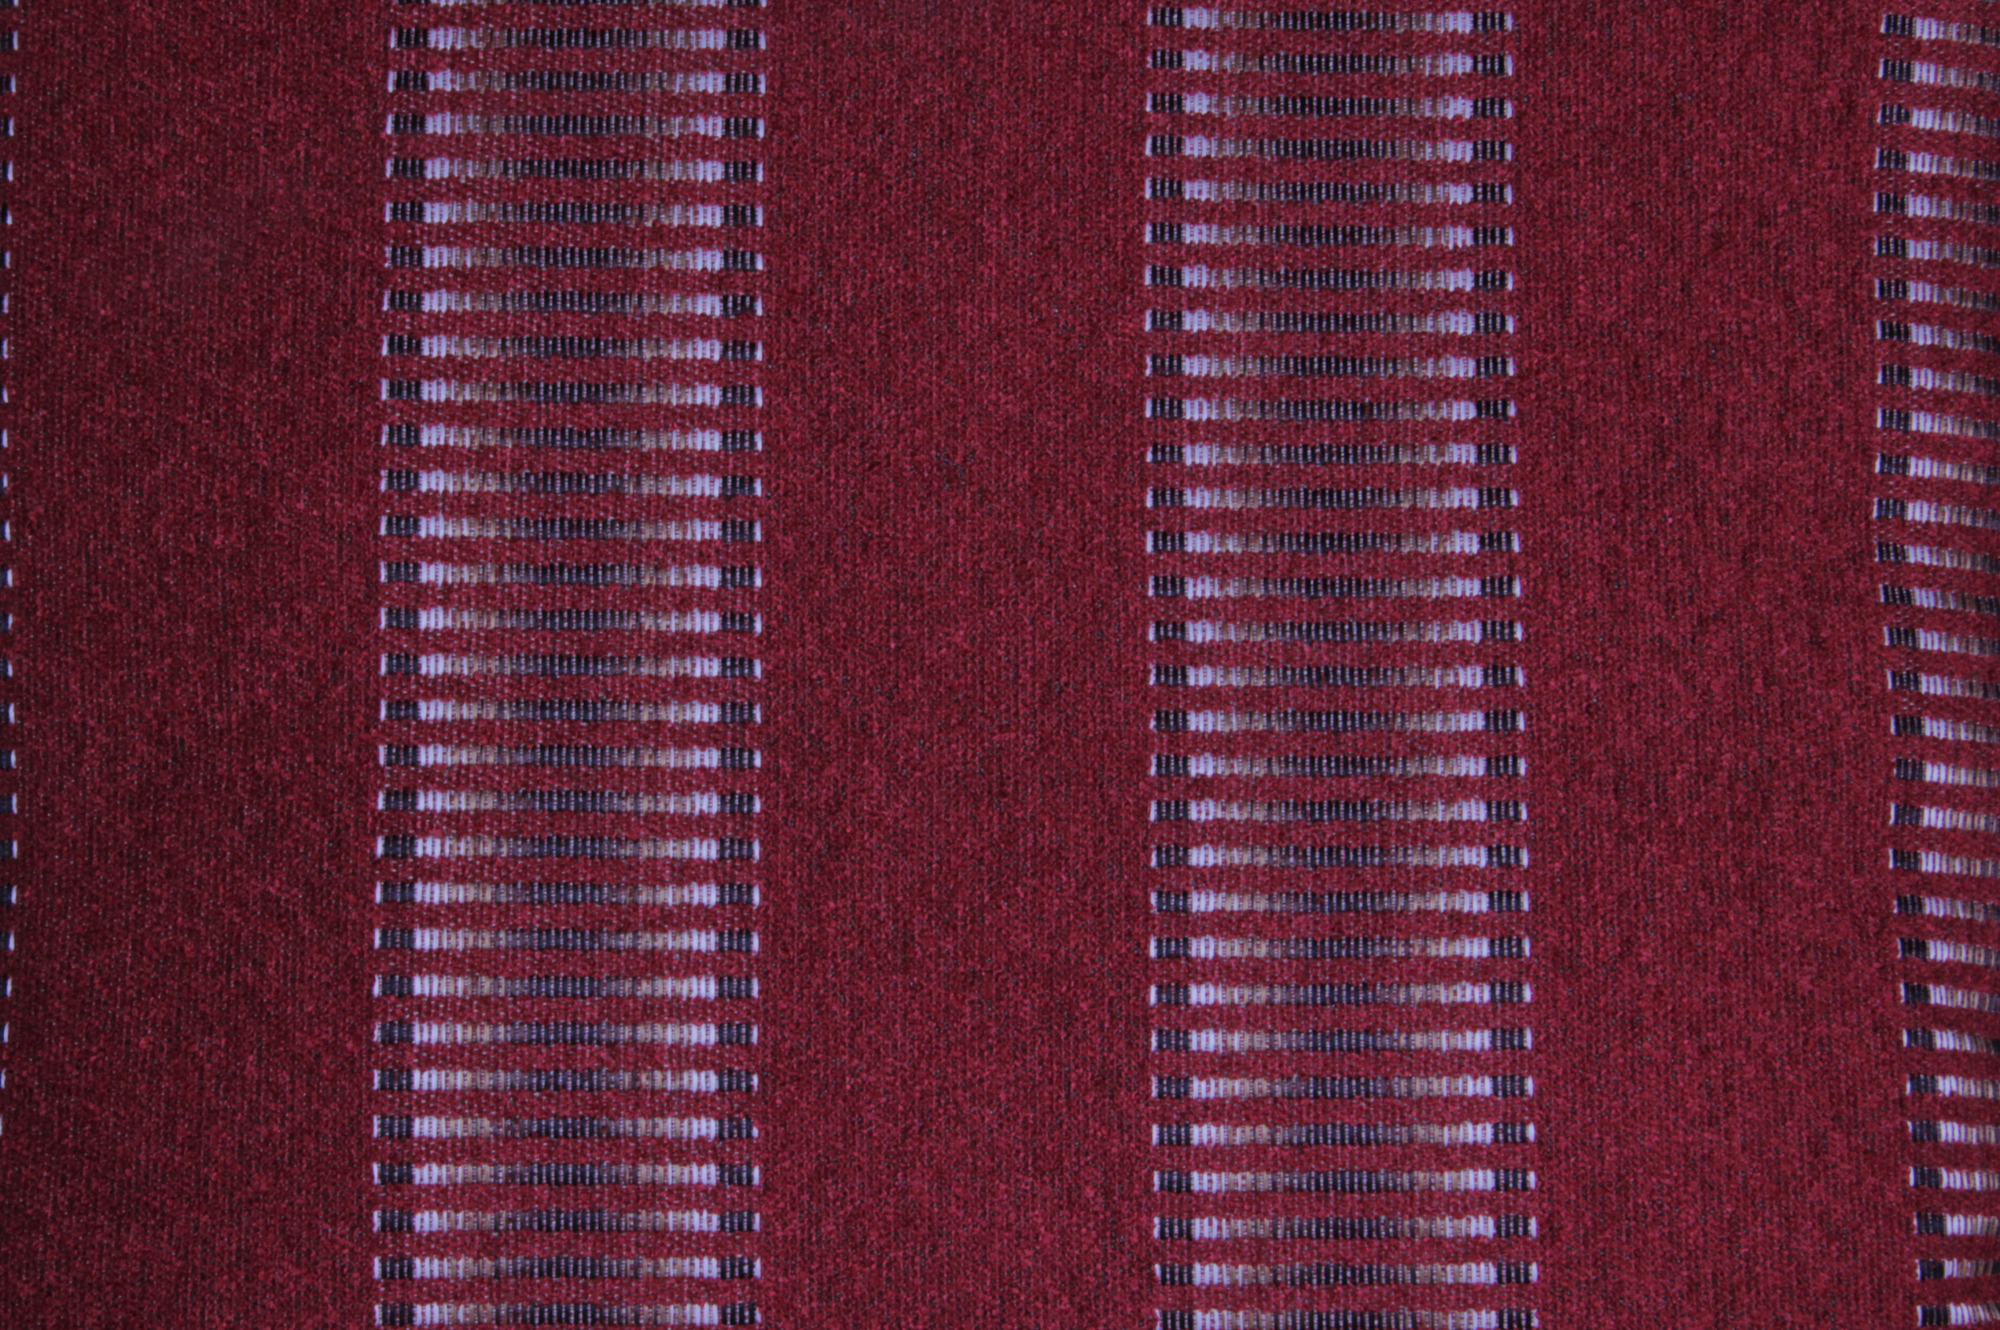 Cushion Caspian Stripe Ember Glow - Fervor + Hue